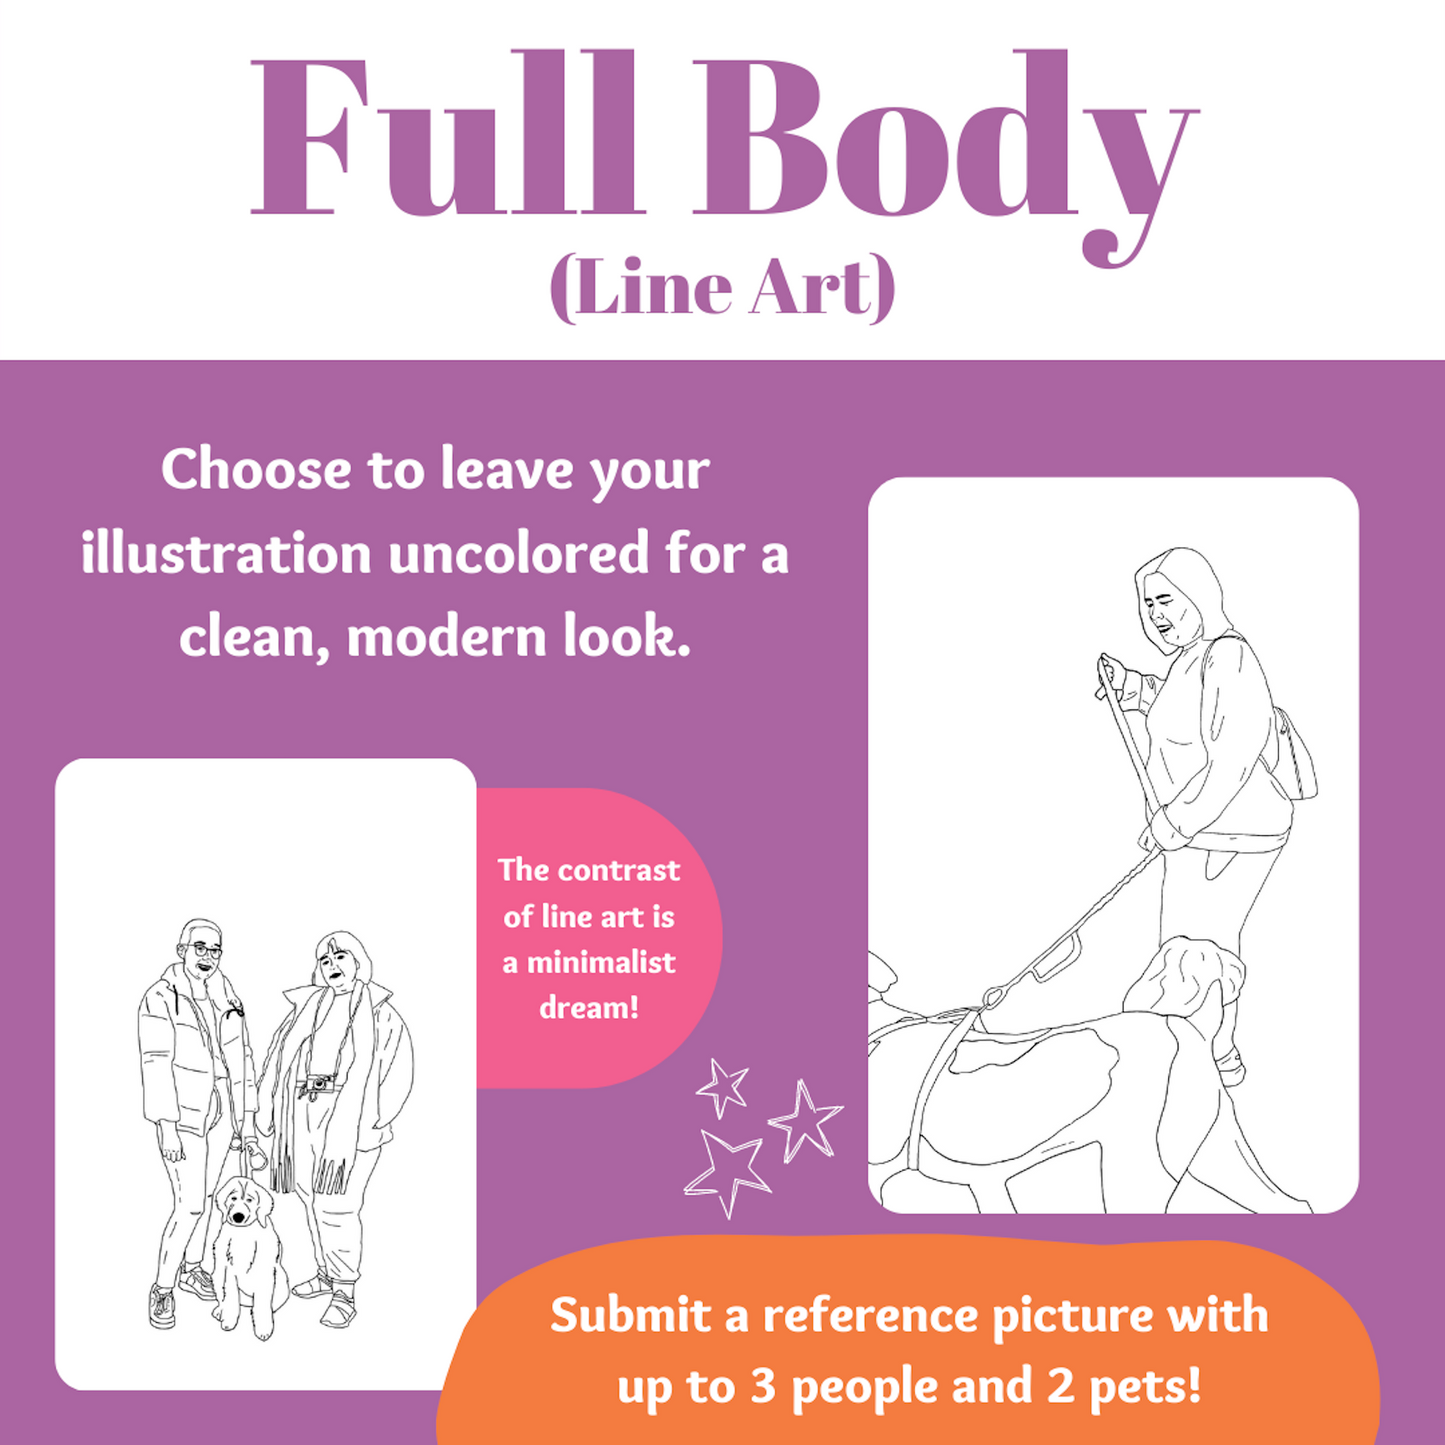 Full Body Portrait | Custom Art, Illustration from Photo